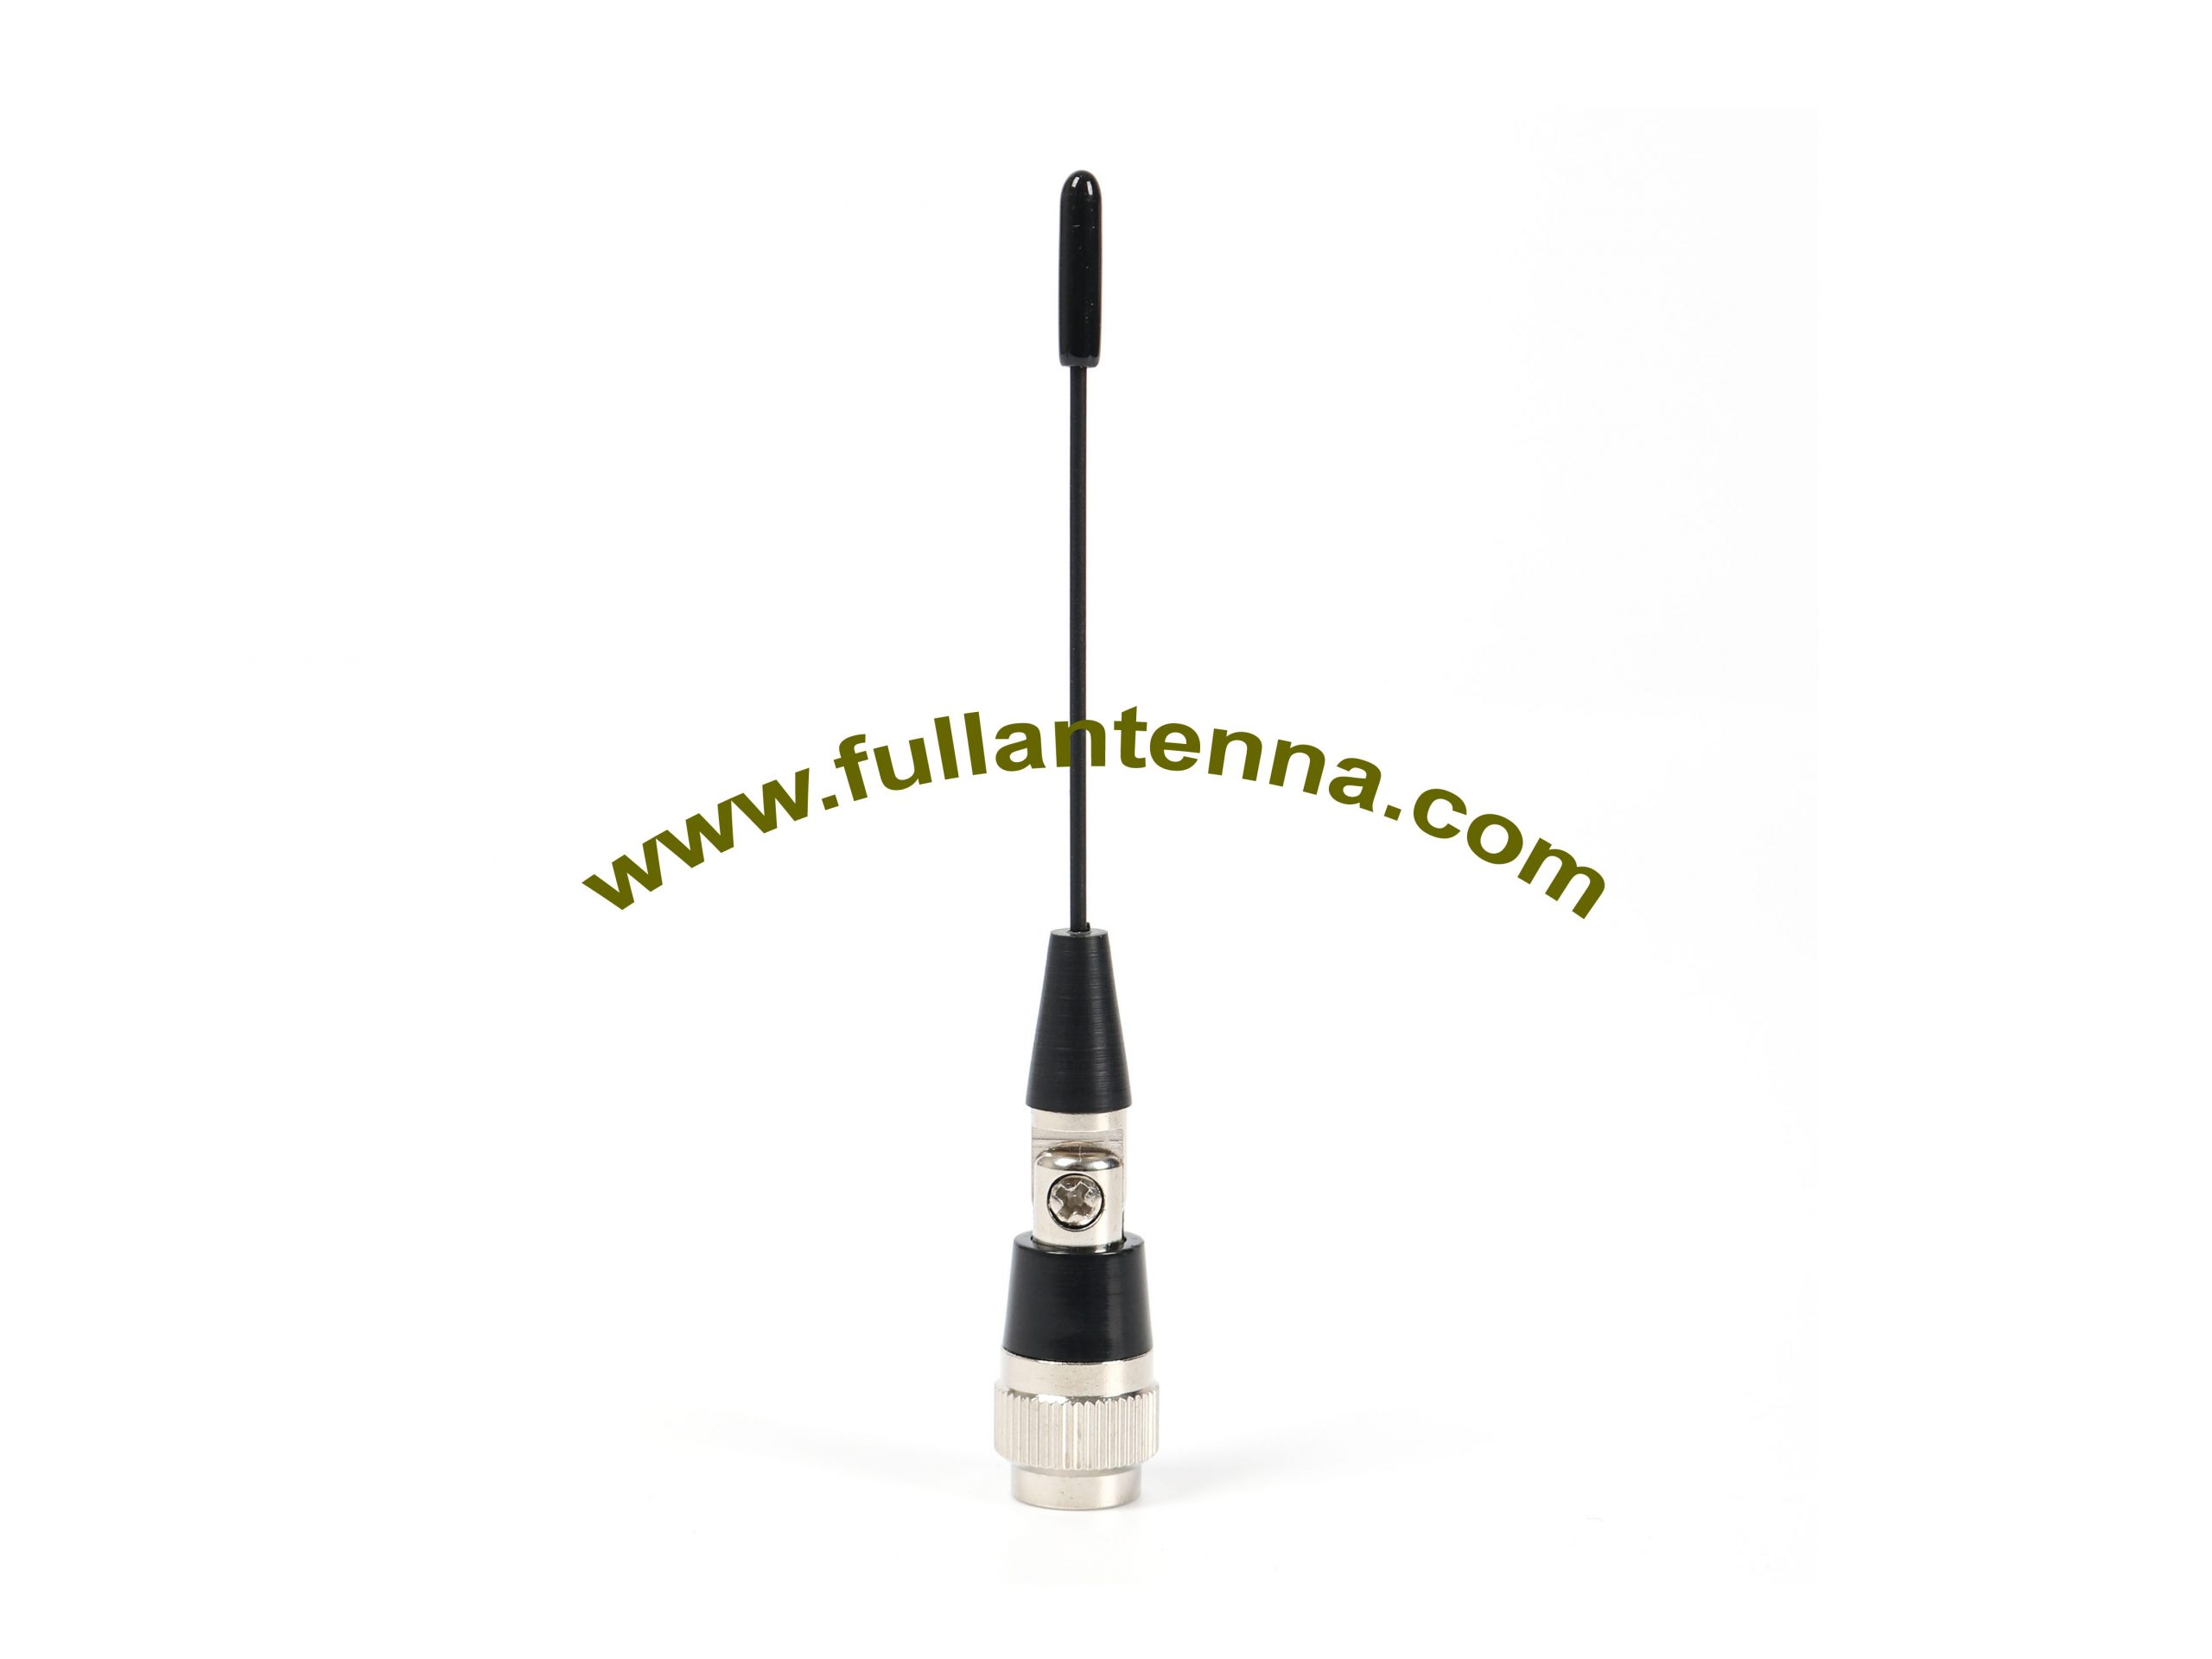 P / N: FA2400. Elastyczna, gumowa antena WiFi / 2.4G, elastyczna antena częstotliwości 2400-2500 MHz